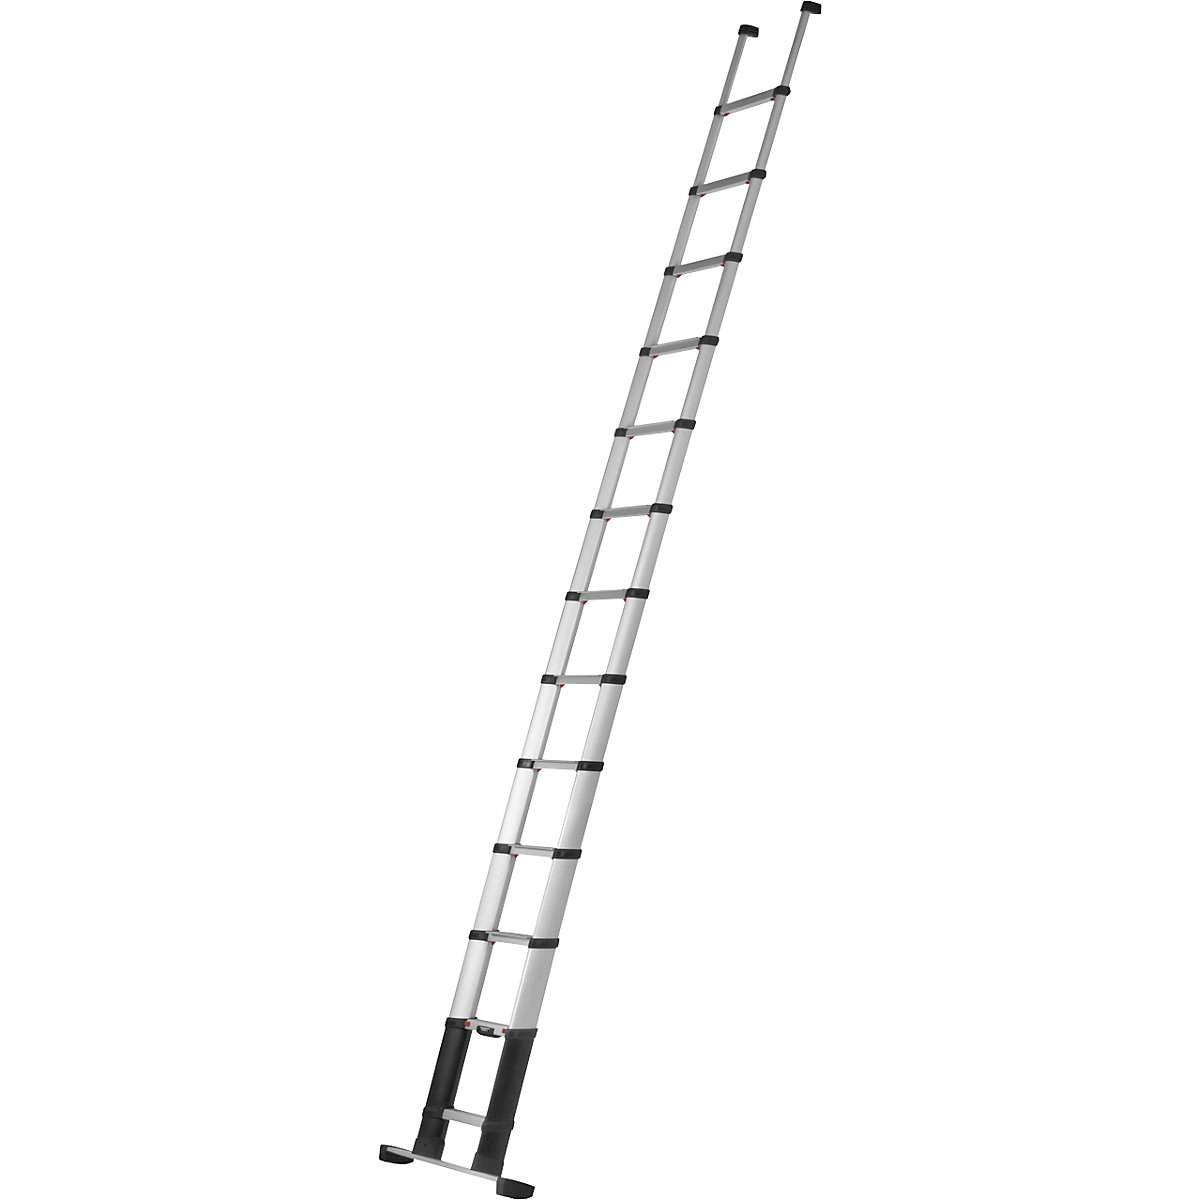 PRIME LINE telescopic lean-to ladder – Telesteps, standard model, 80 mm step depth, 13 steps, beam-7